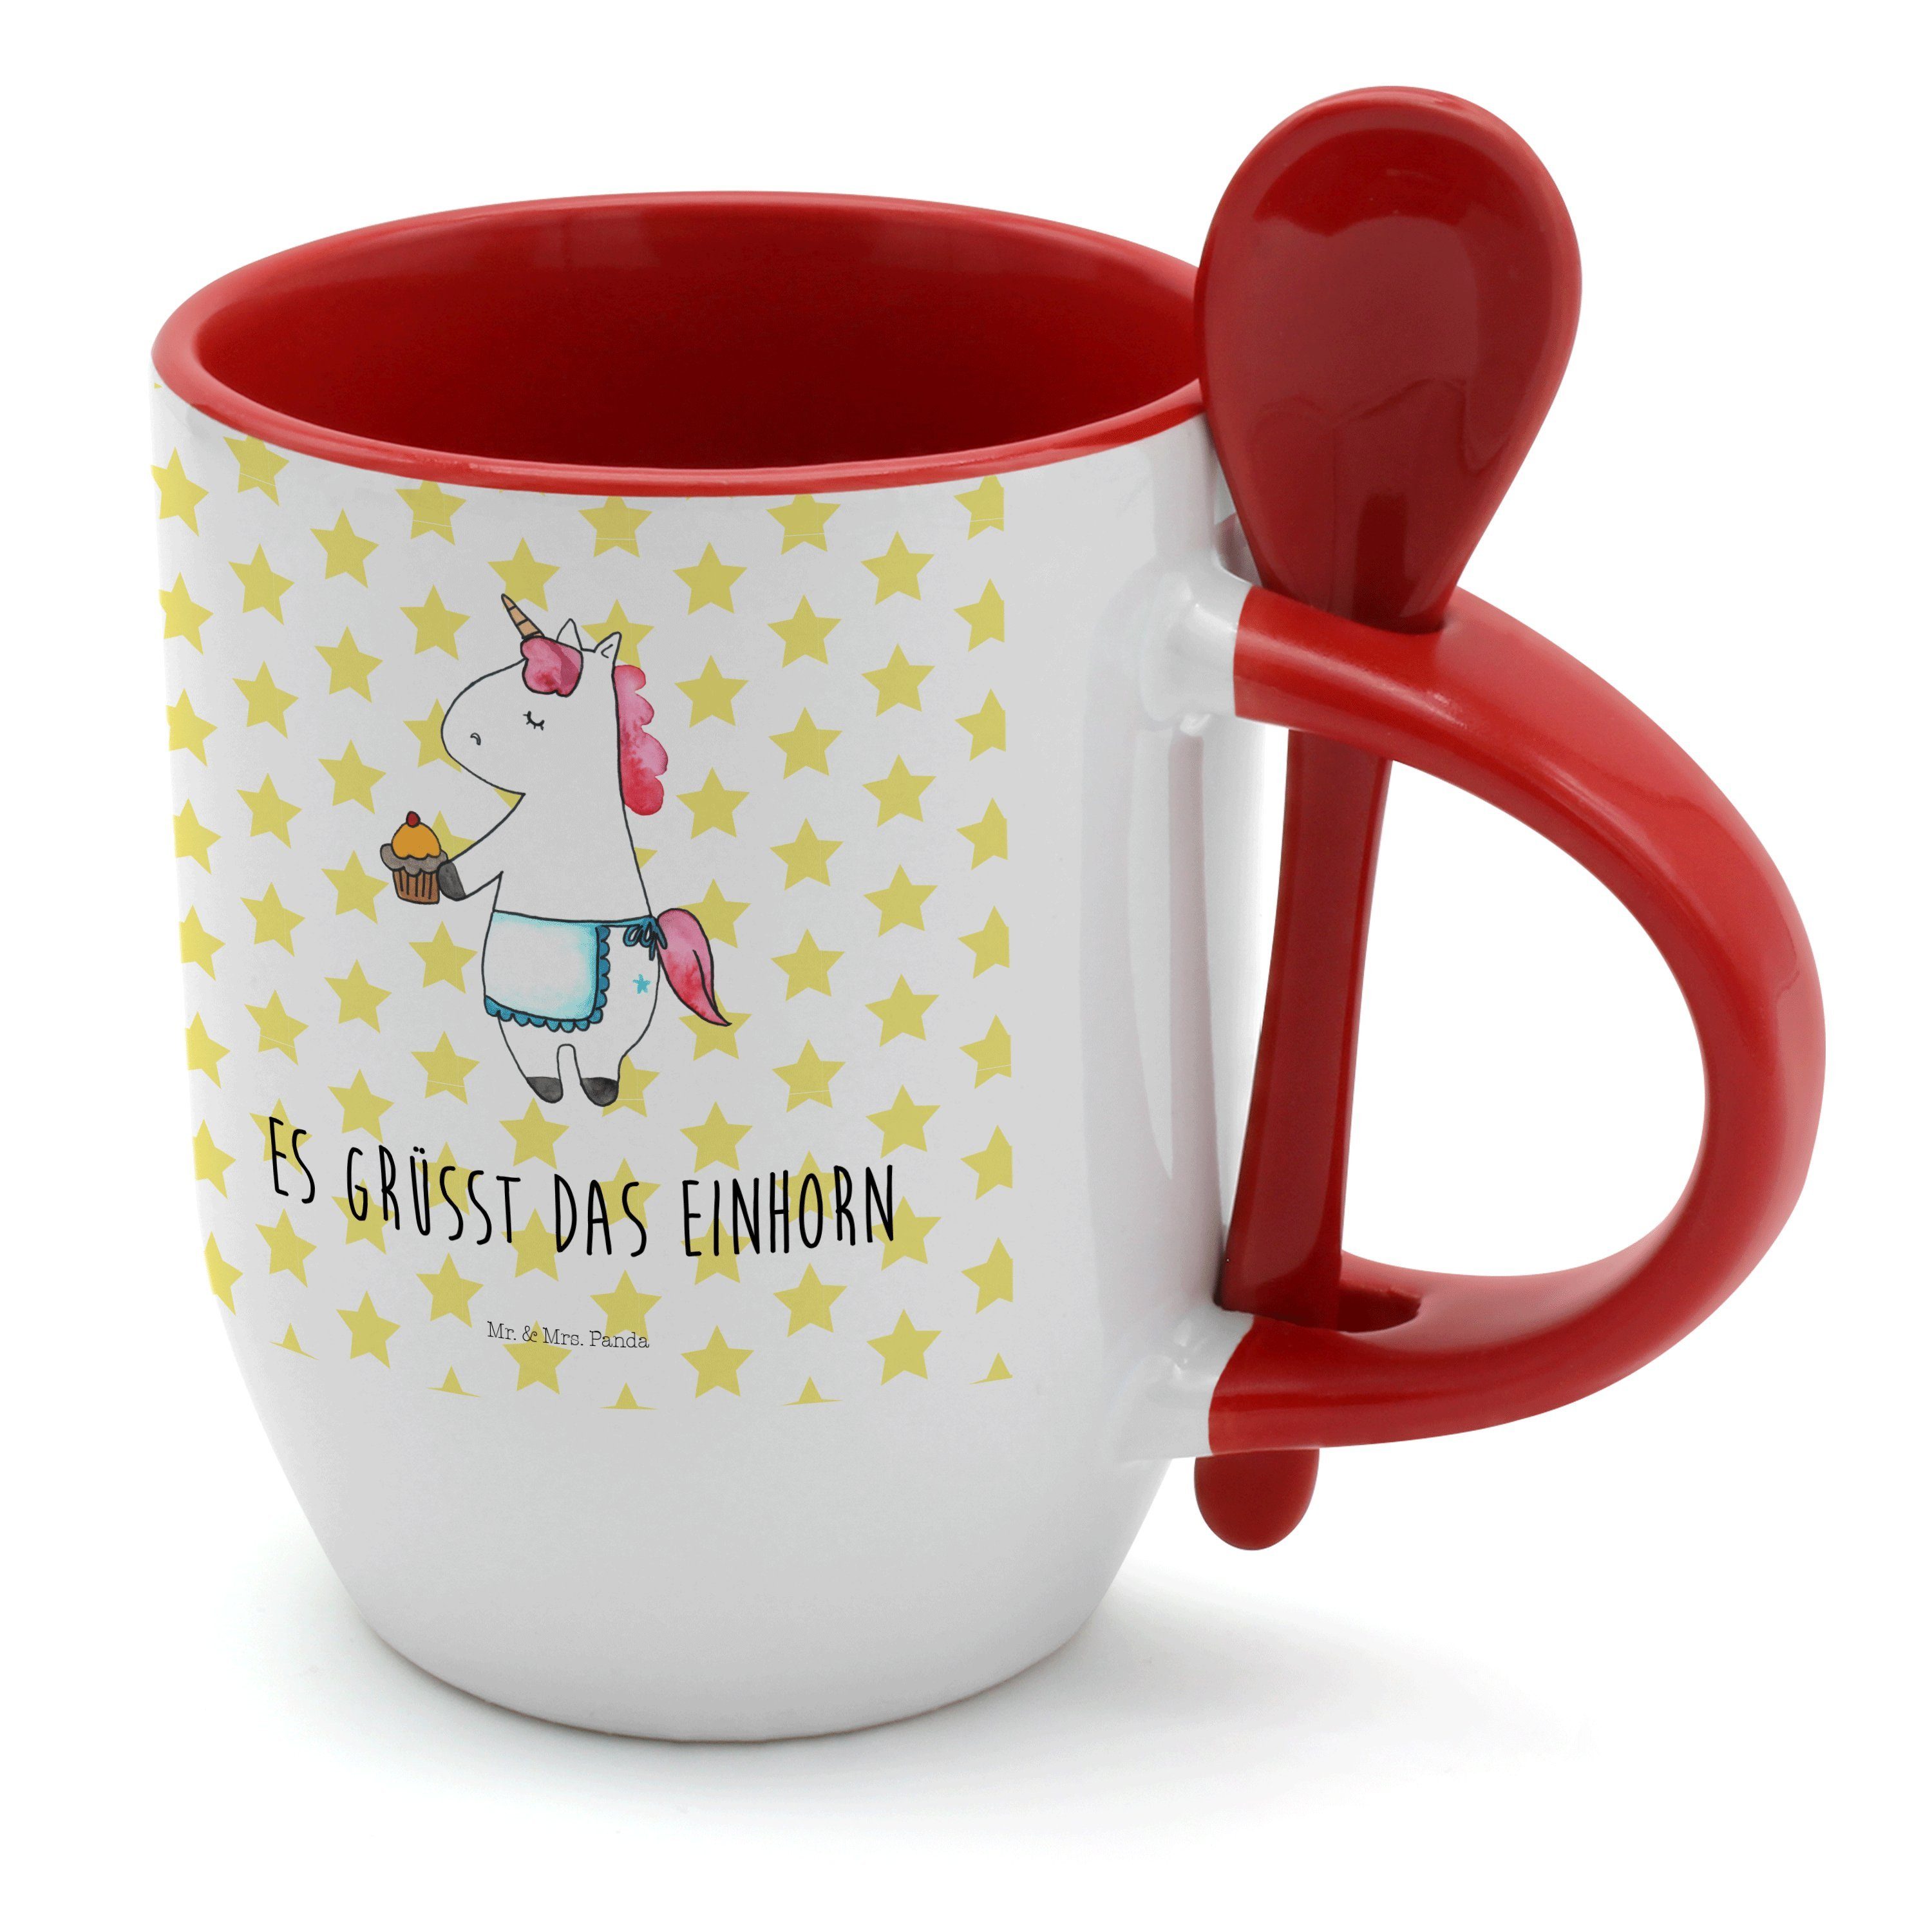 Mr. & Mrs. Panda Tasse Einhorn Muffin - Weiß - Geschenk, Liebesgrüße, Unicorn, Tasse mit Spr, Keramik